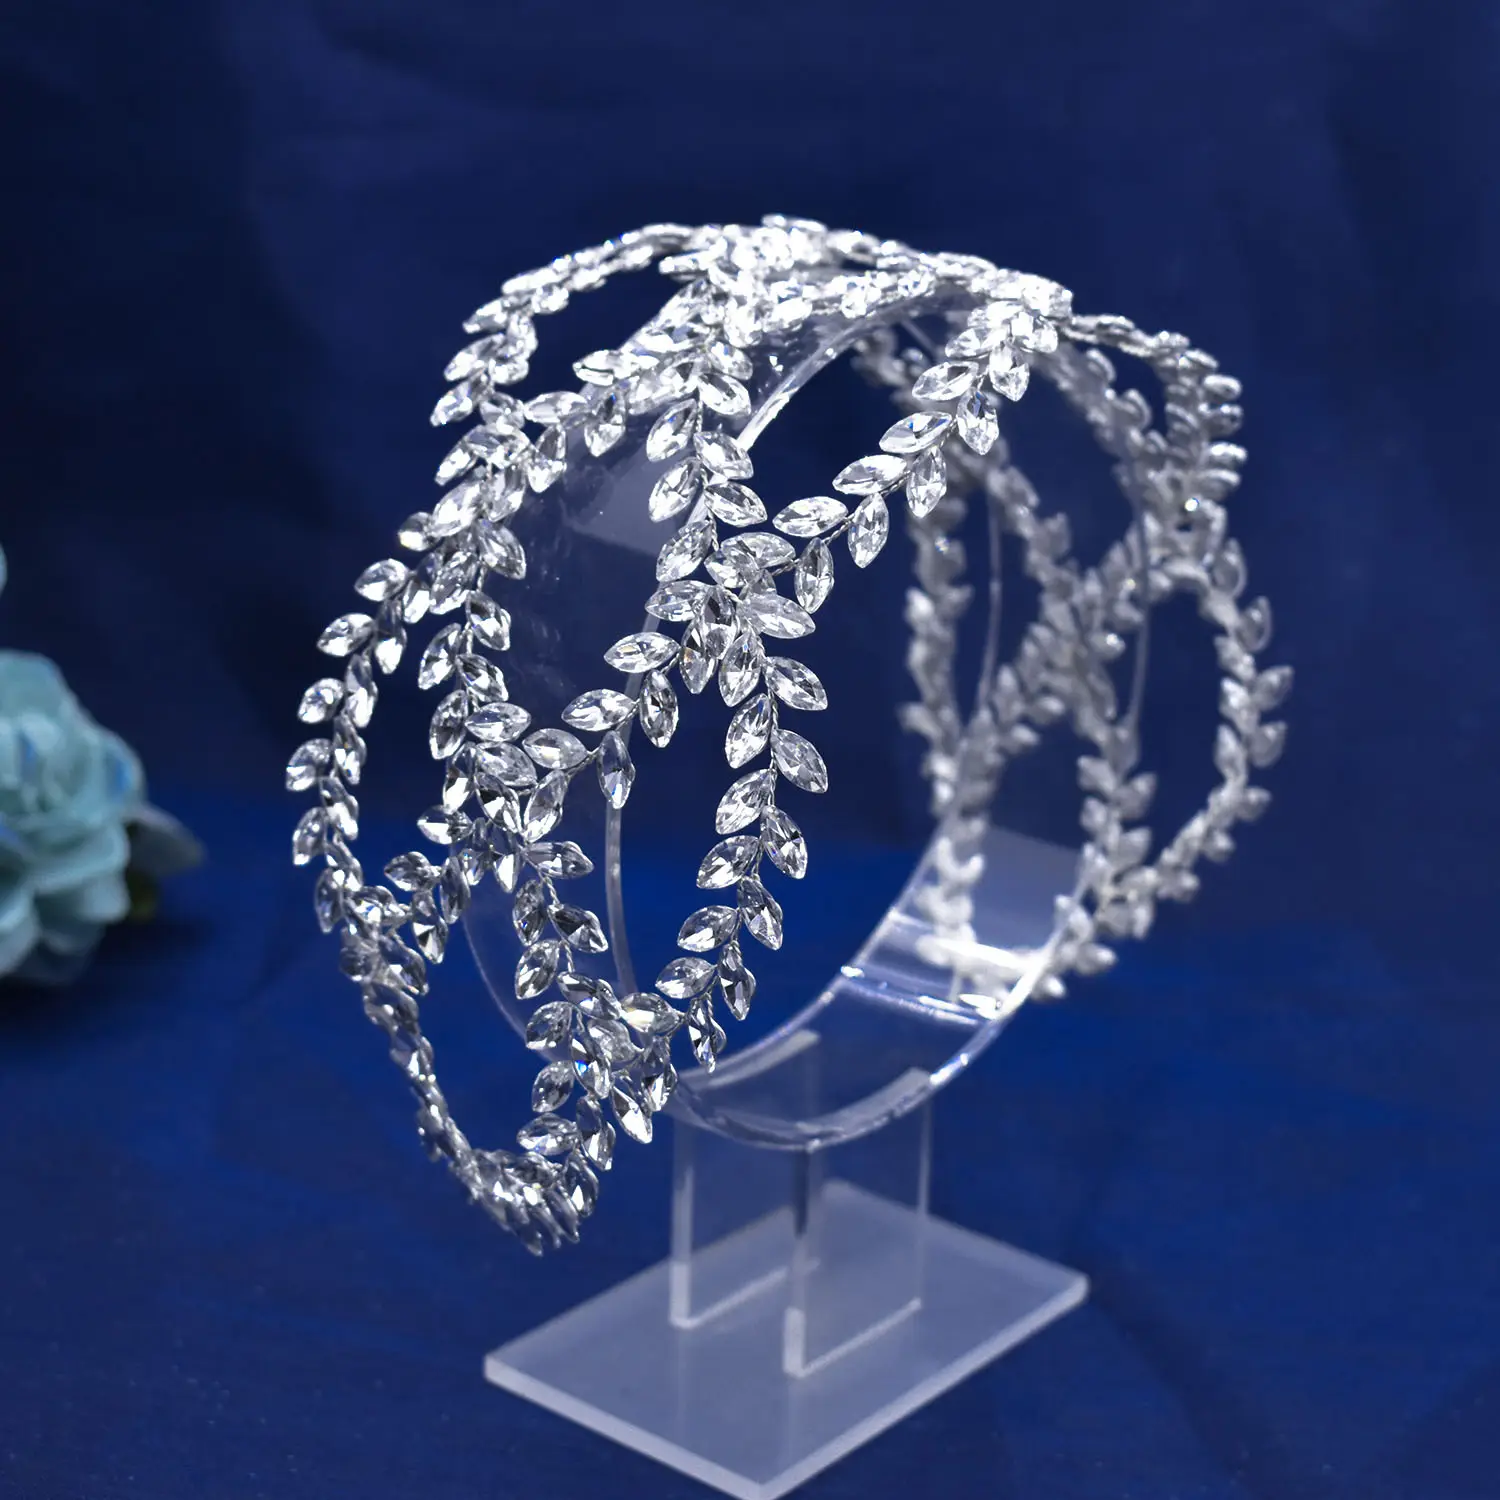 Promocionais Handmade Cabelo Acessórios Bridal Jewelry Hair Vine Casamento Prom Strass Crossover Headbands